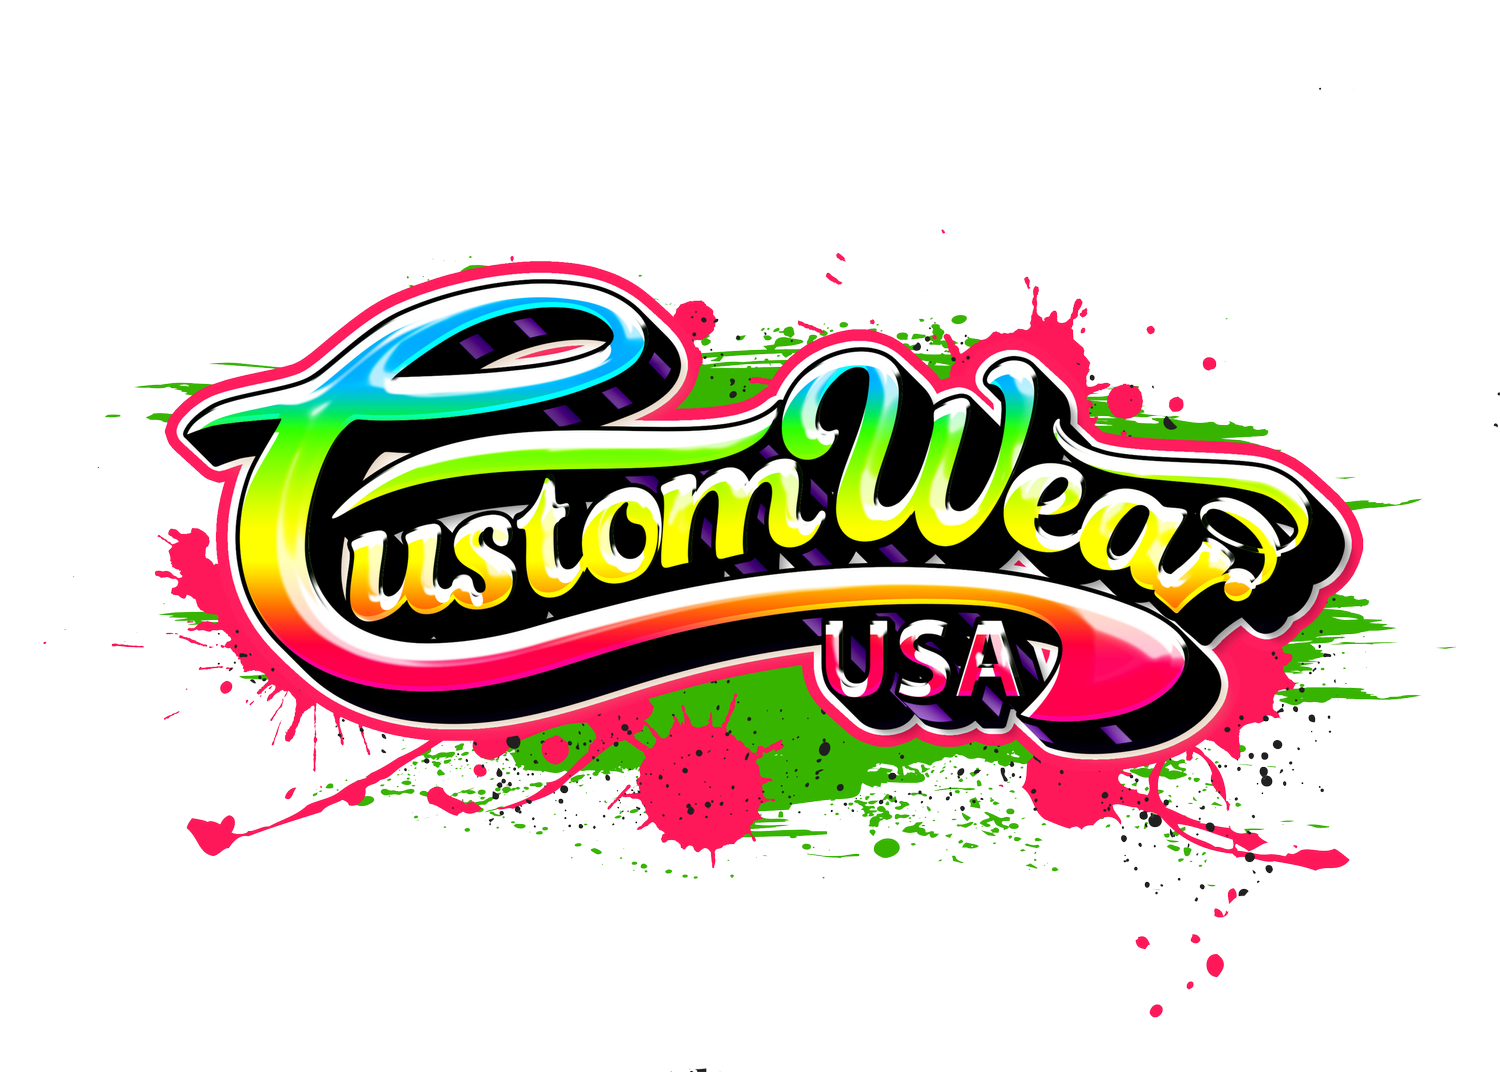 Customwear USA